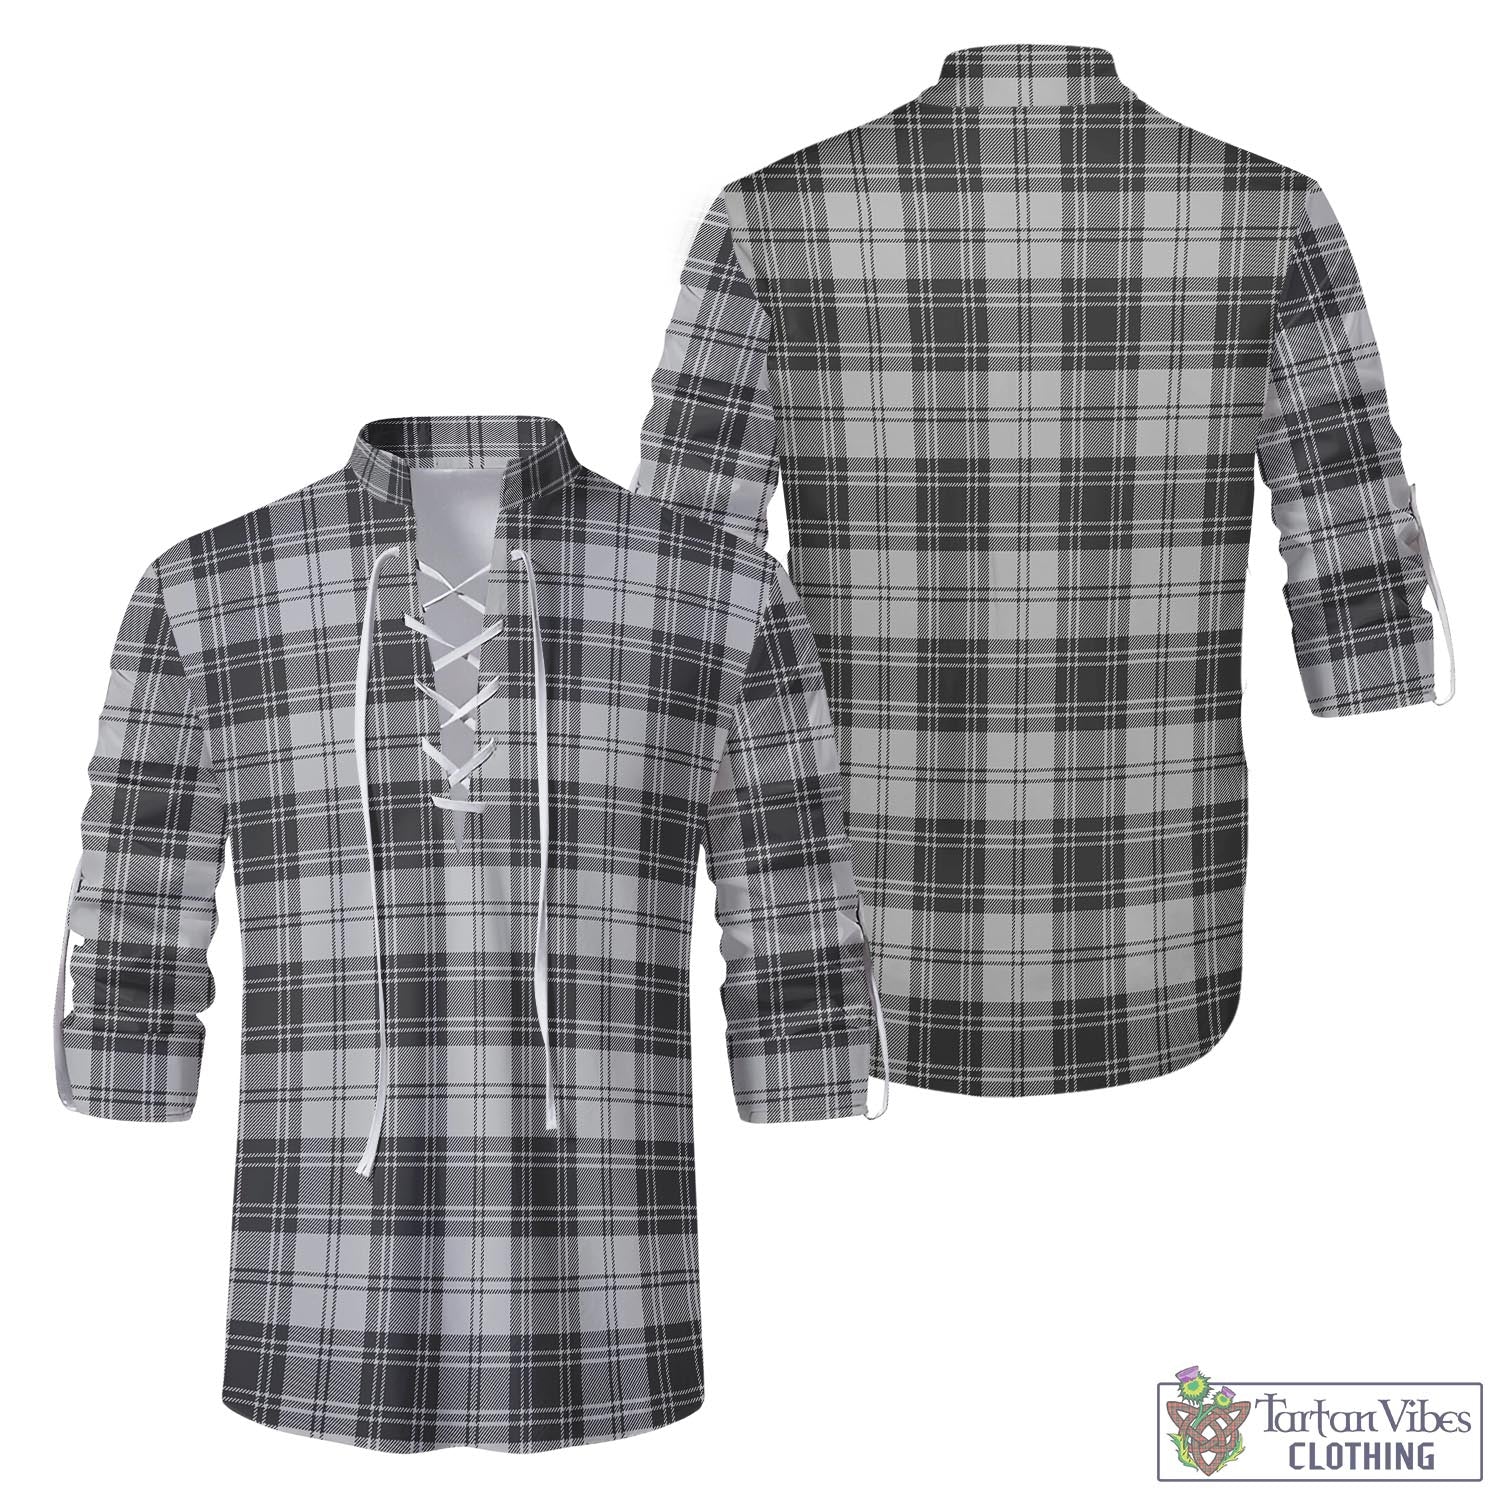 Tartan Vibes Clothing Glendinning Tartan Men's Scottish Traditional Jacobite Ghillie Kilt Shirt